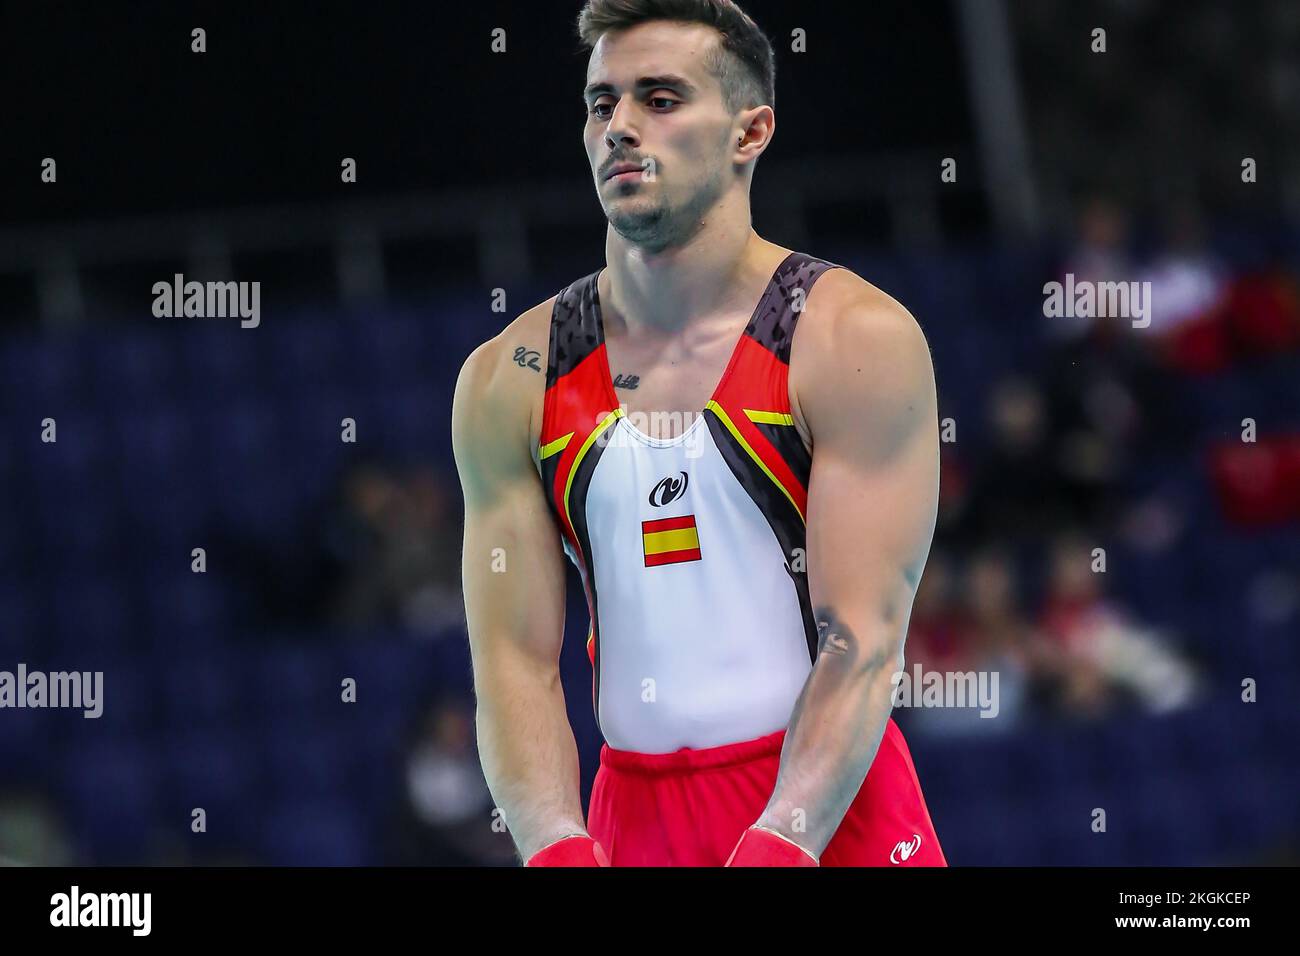 Szczecin, Pologne, 10 avril 2019: Portrait de l'athlète masculin Vera Adria d'Espagne pendant les championnats européens de gymnastique artistique Banque D'Images